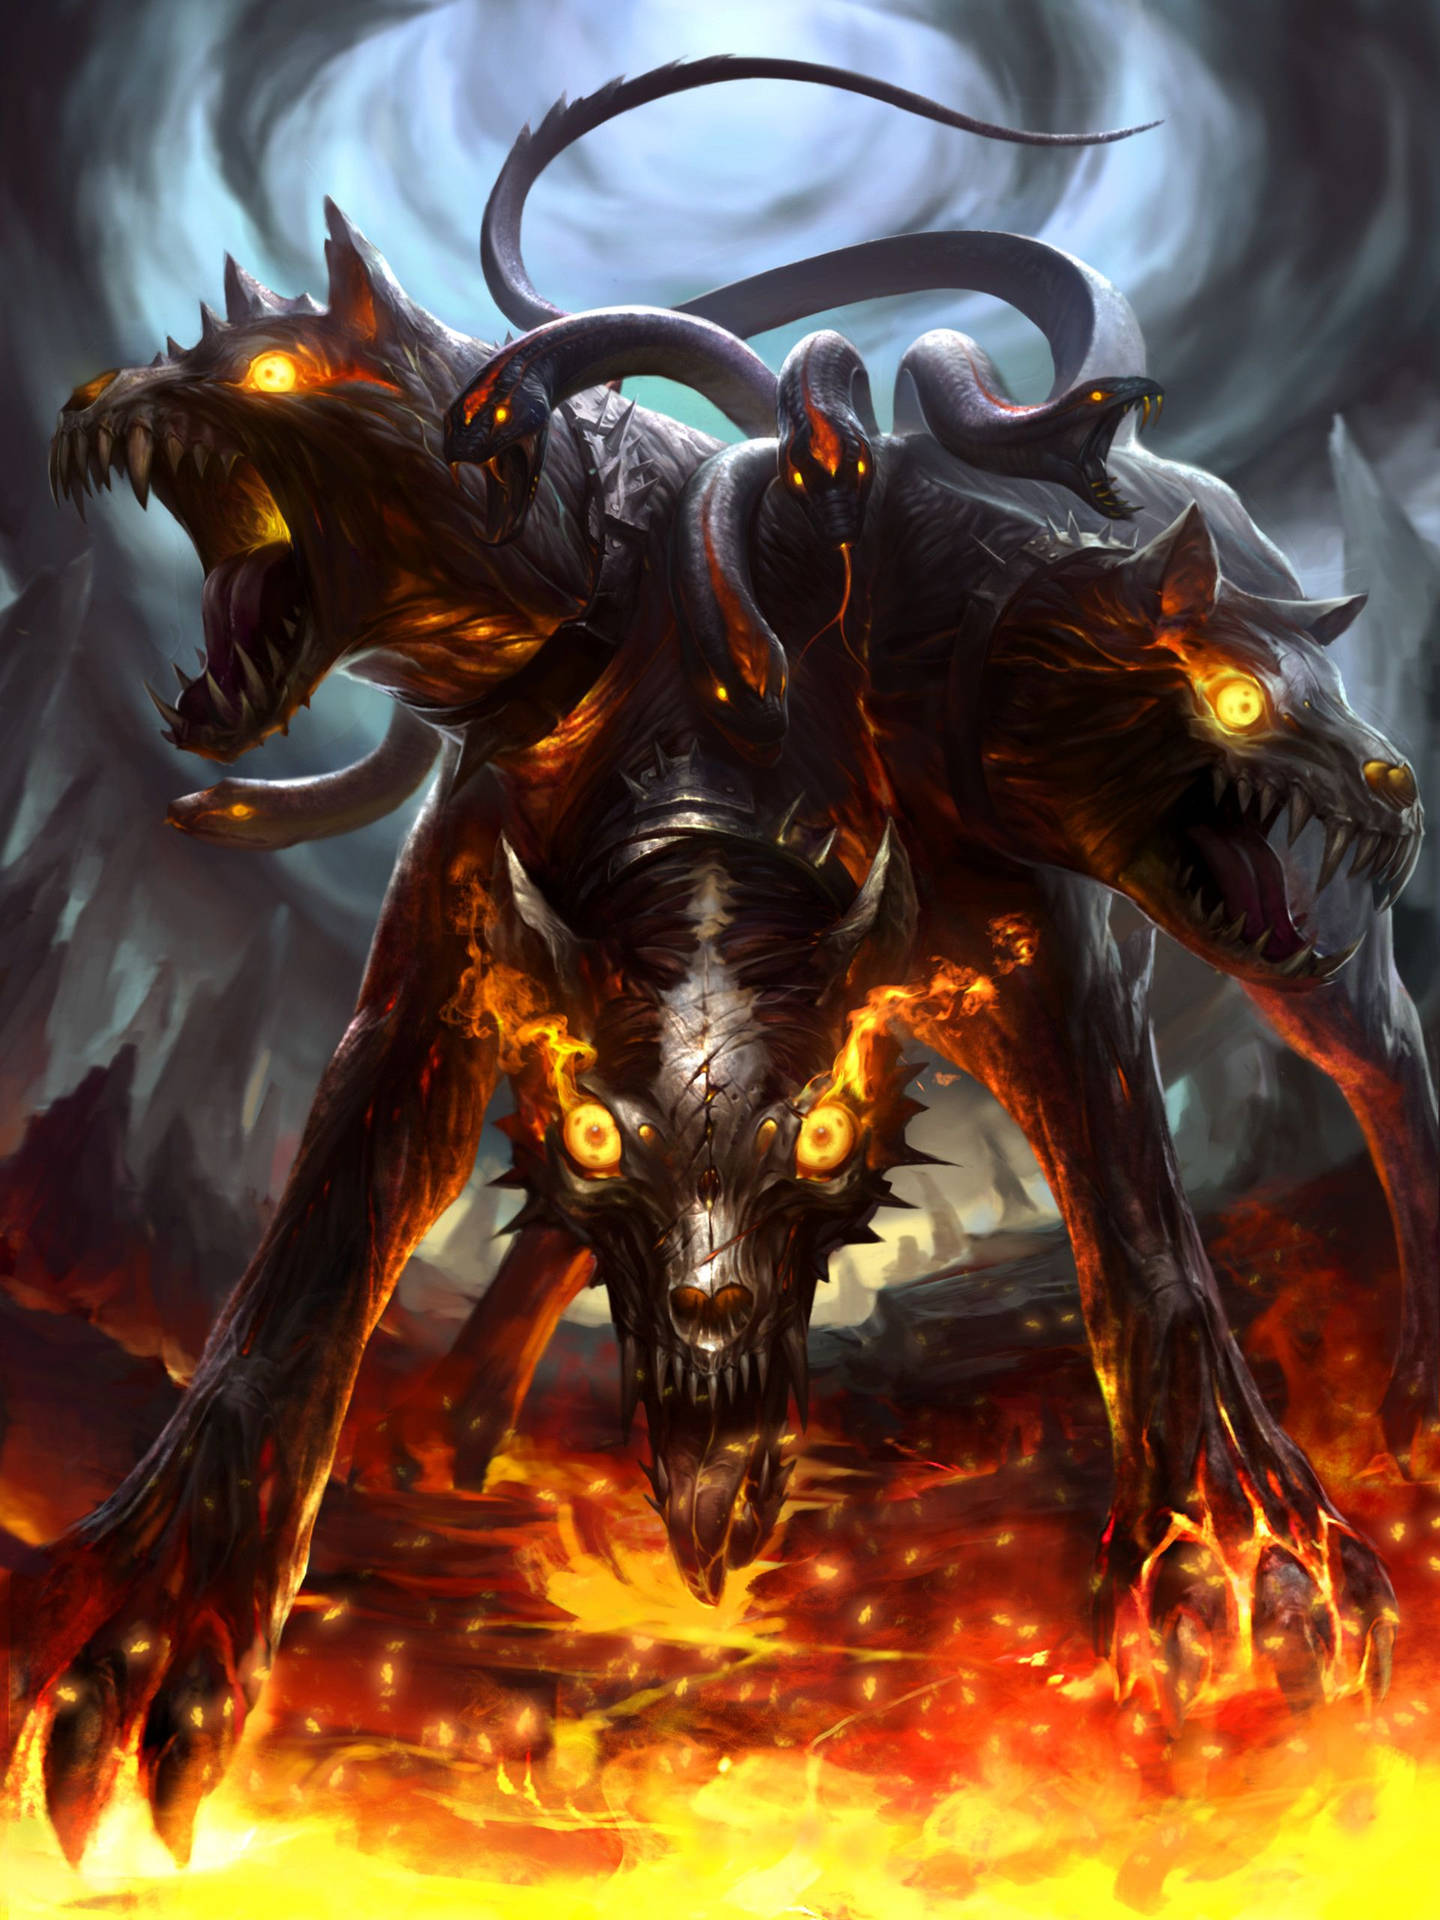 Cerberus - The Three-headed Beast Of Mythology